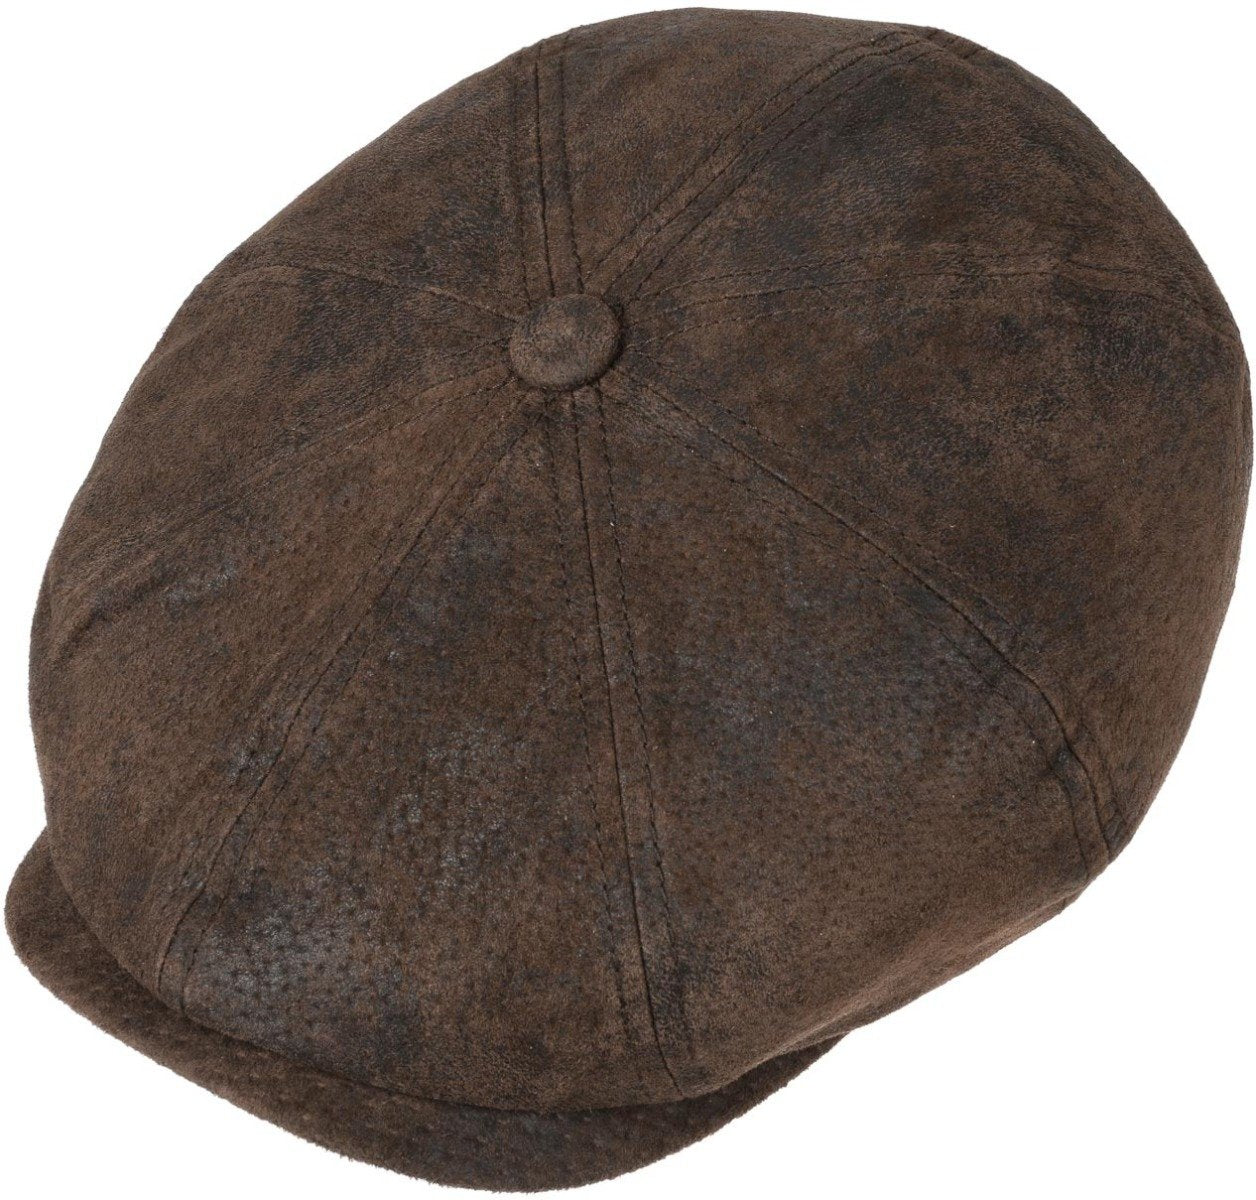 Dark Brown Hatteras Pigskin Leather Cap  Stetson   